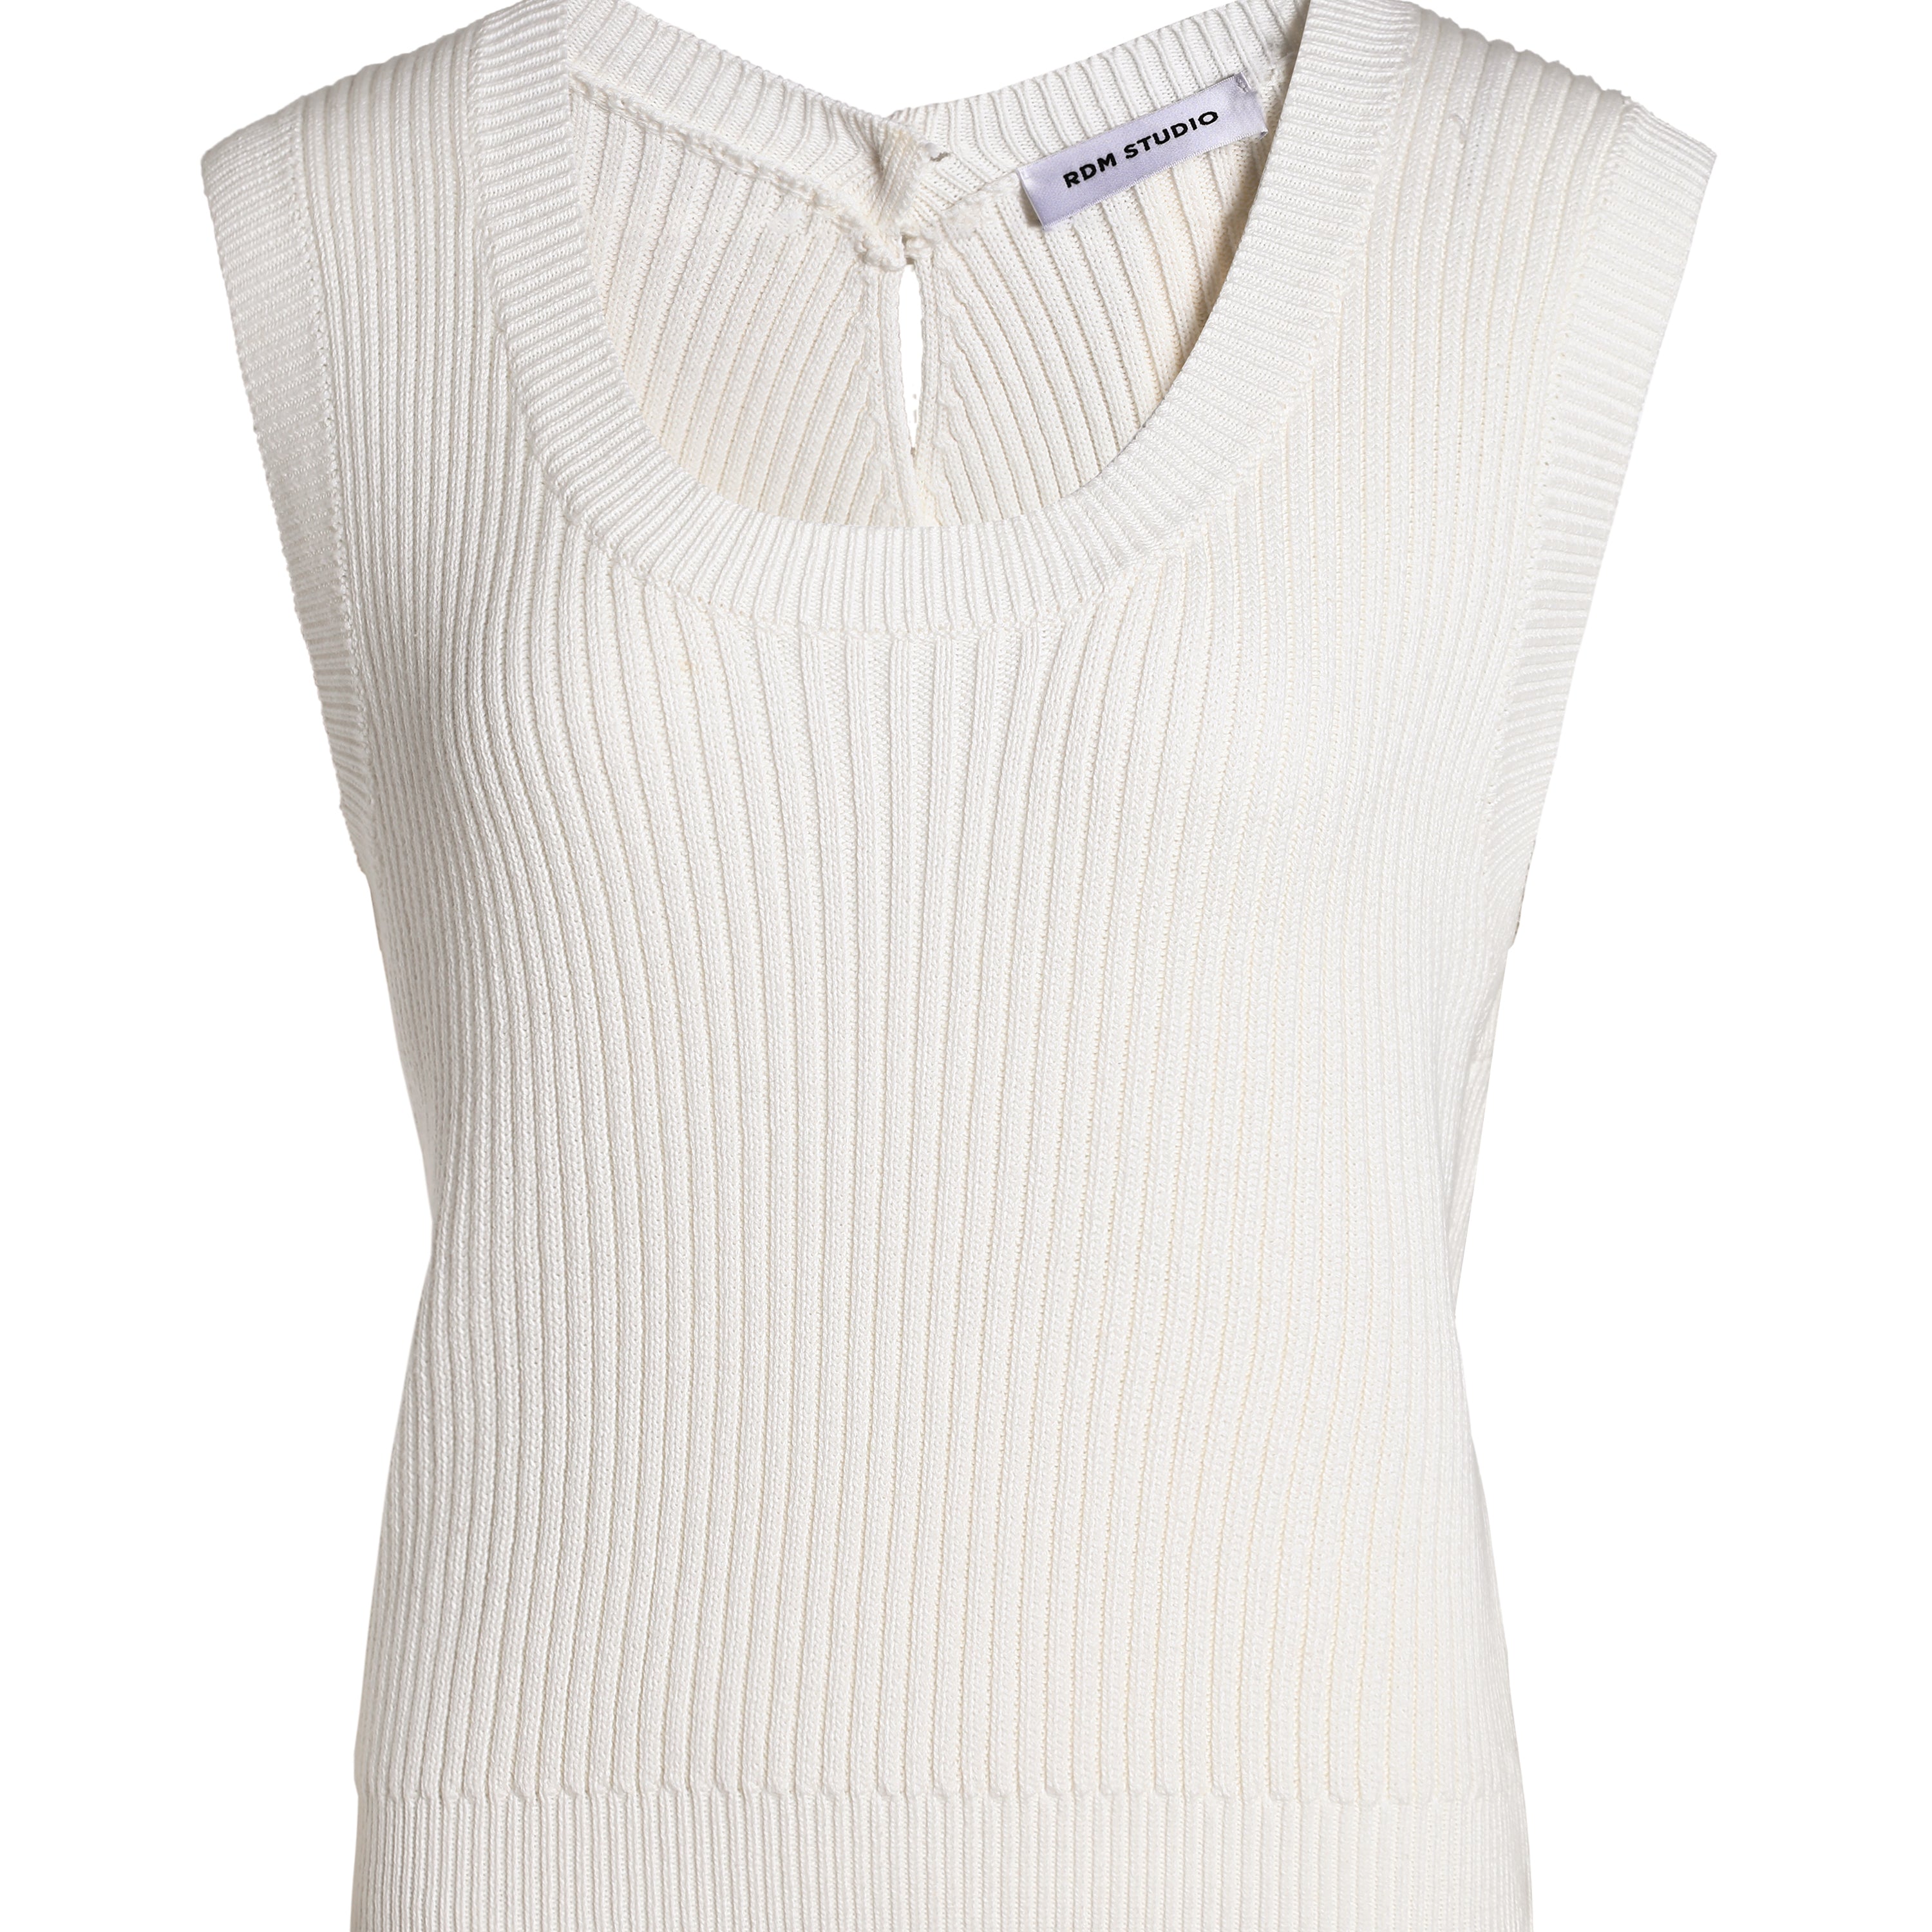 Flynn white cotton tank knit top